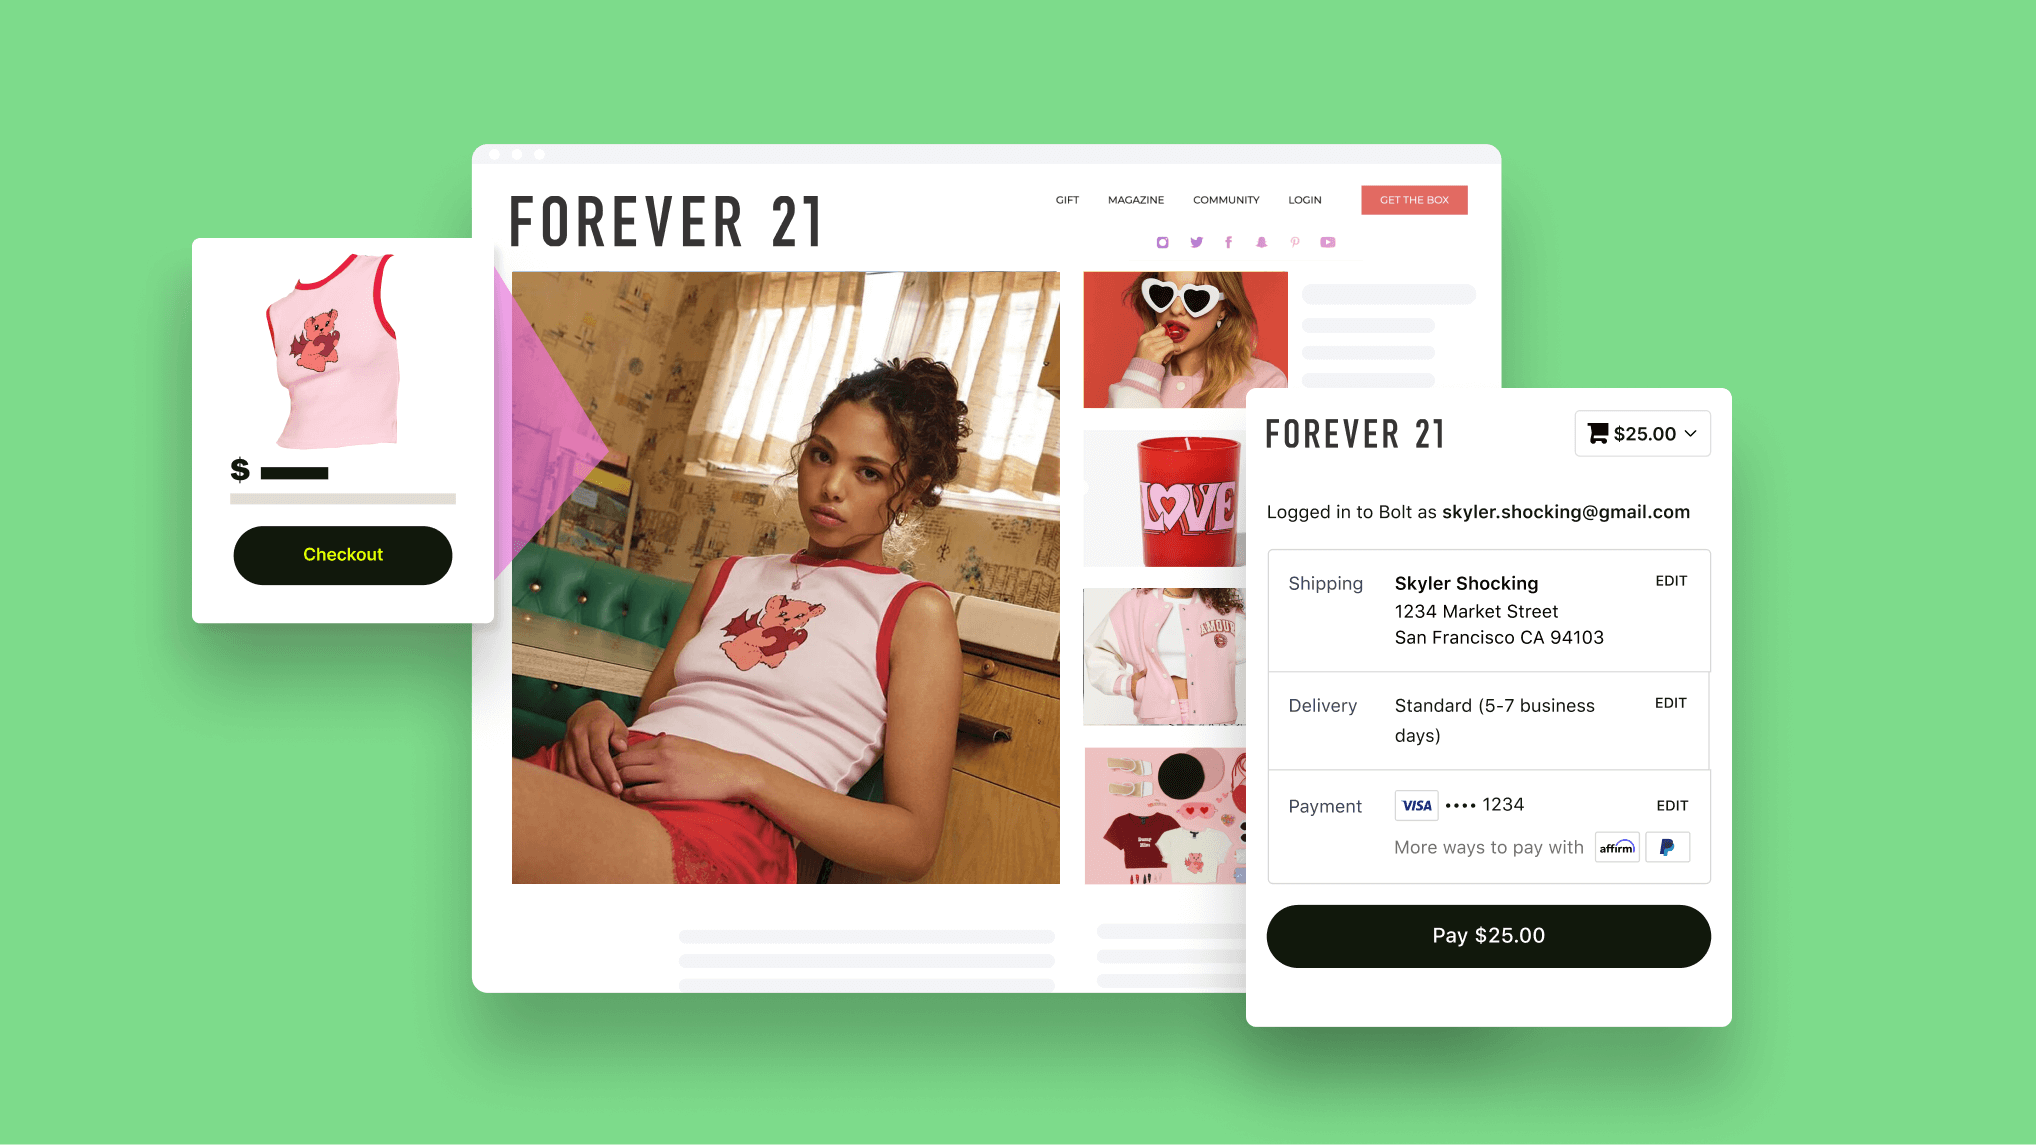 Forever 21 online shopping